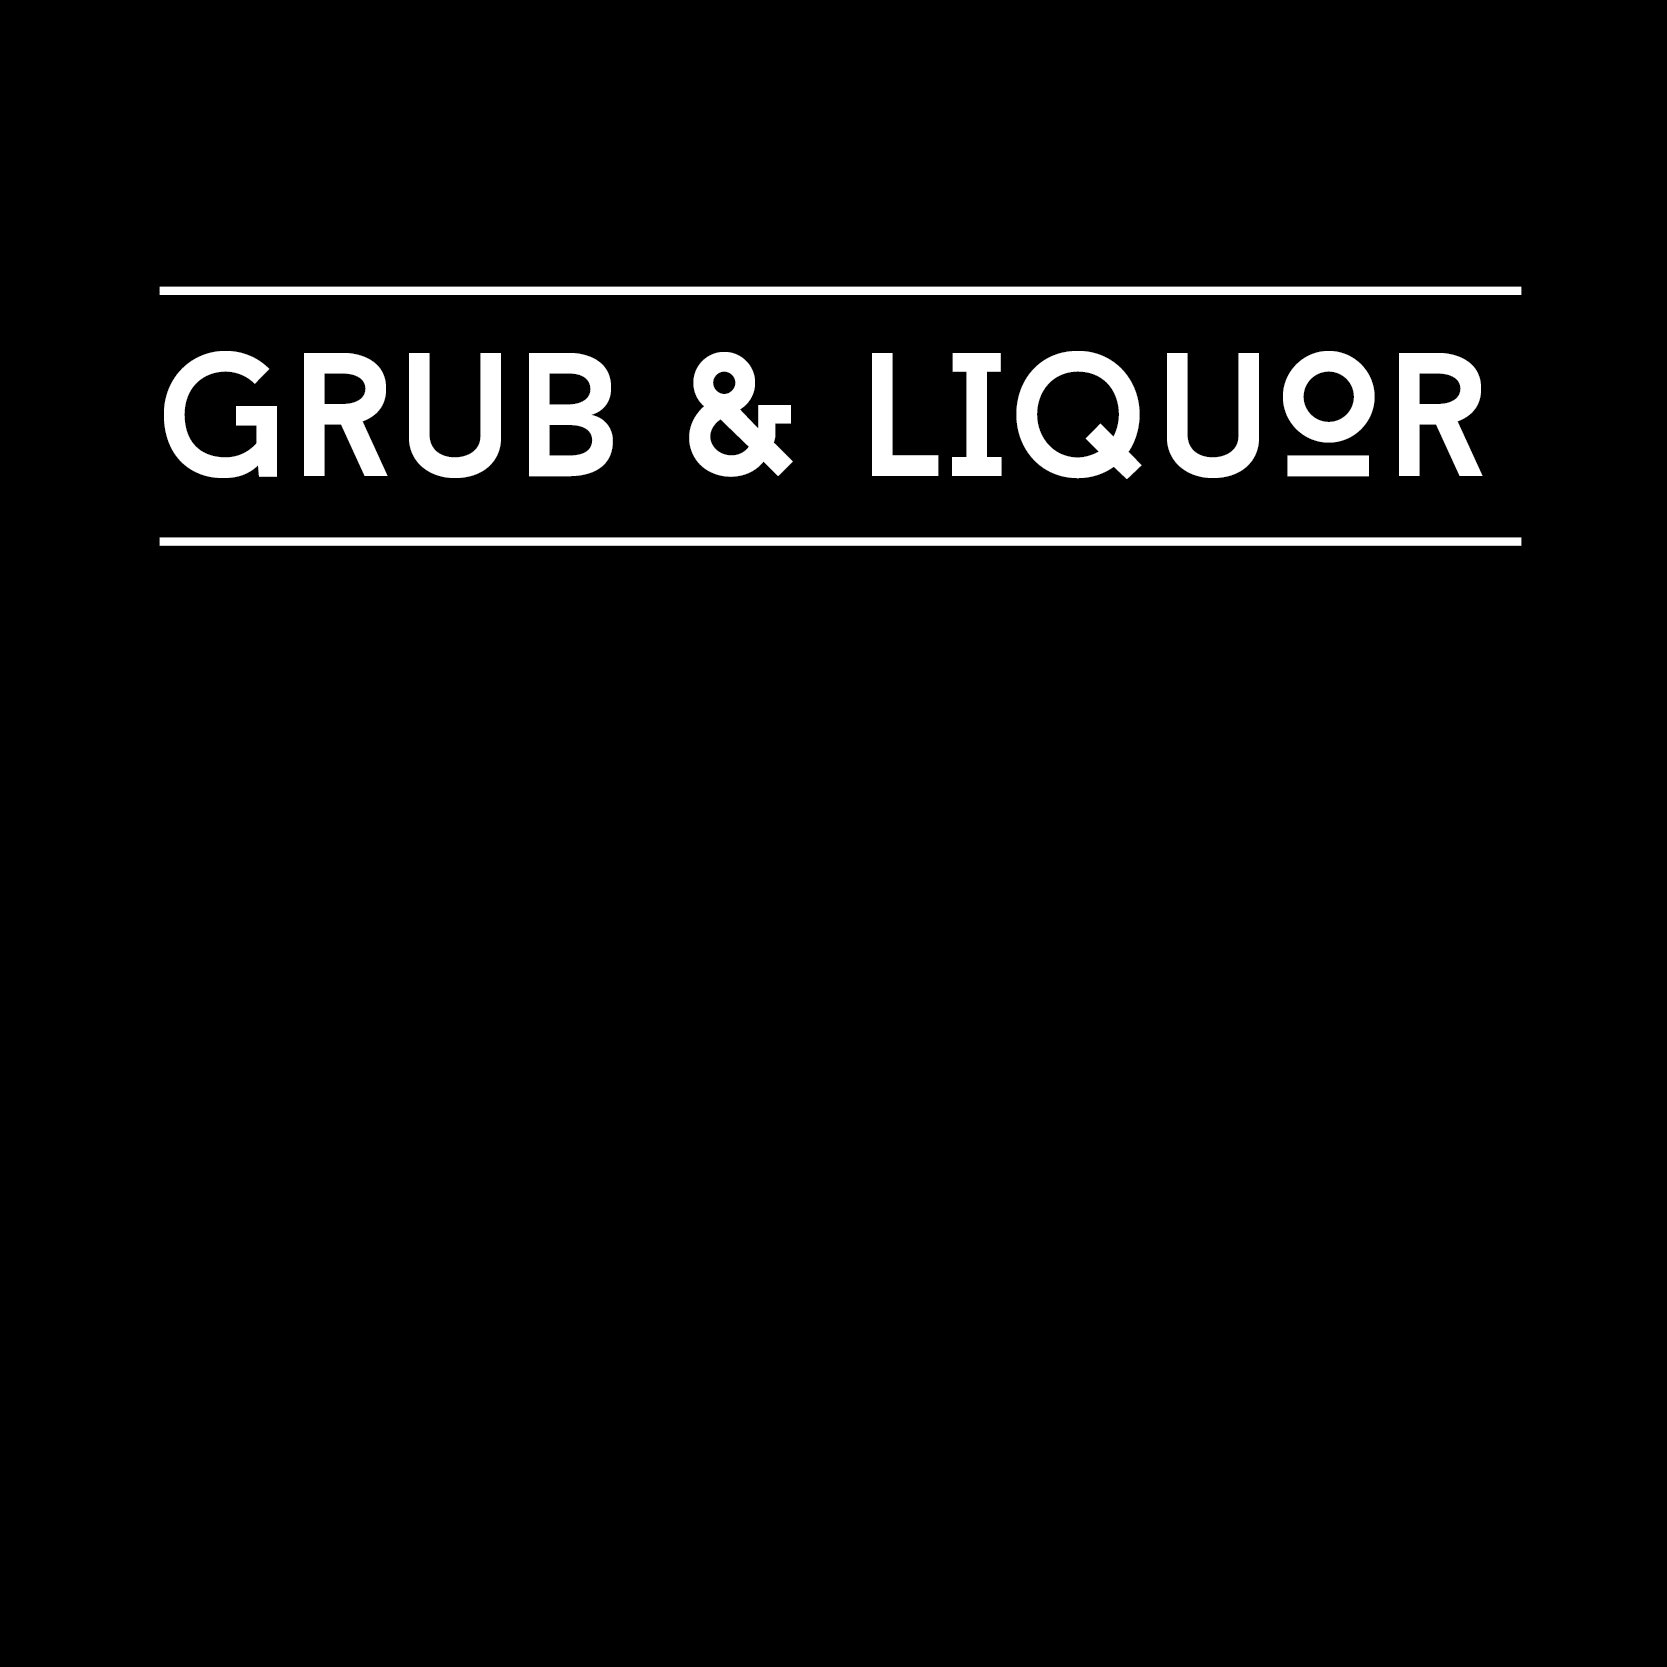 Grub & Liquor